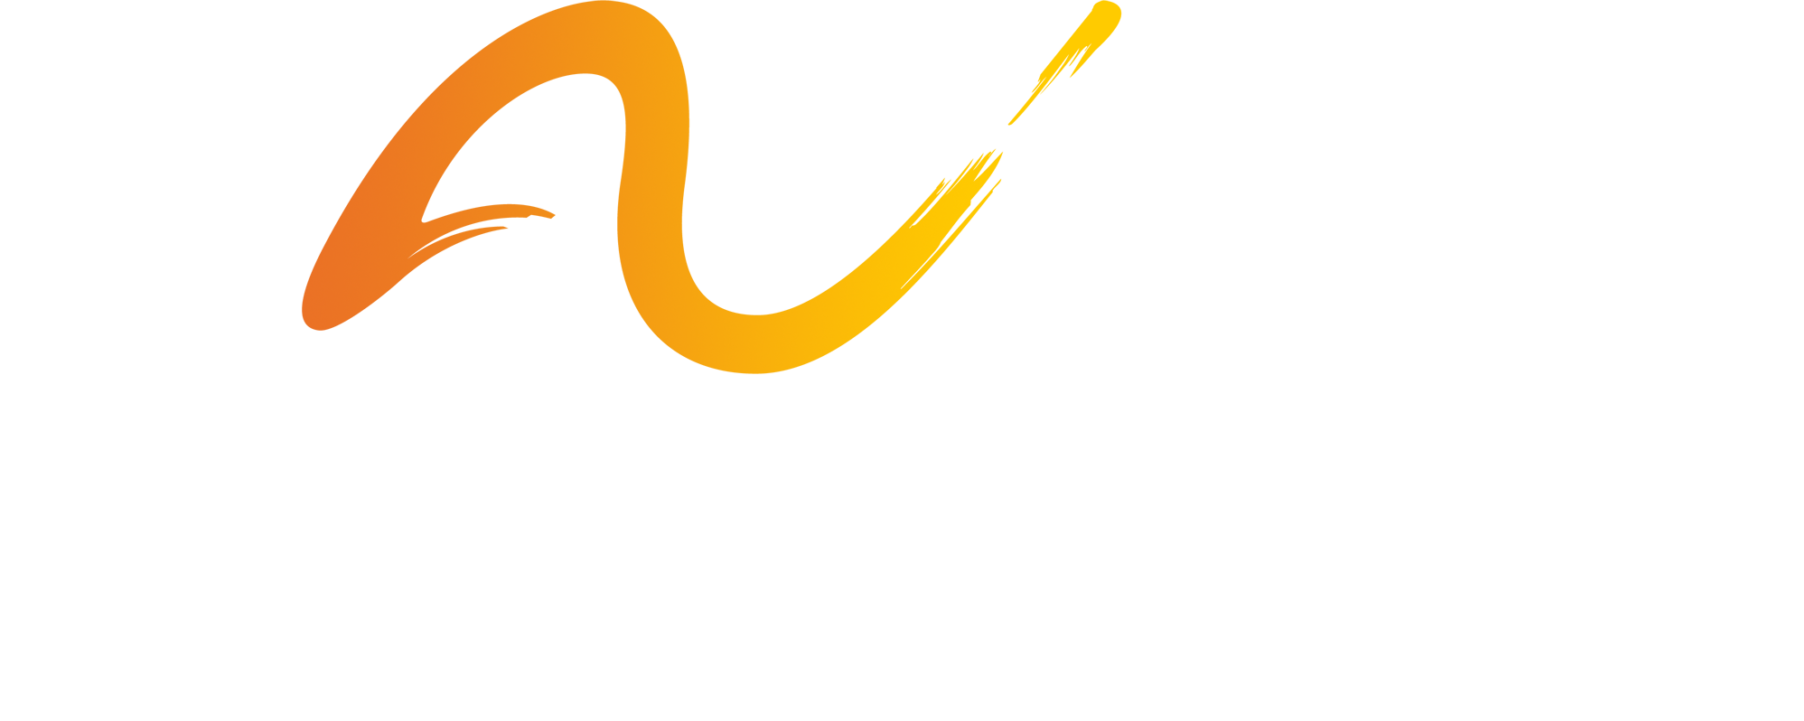 The Arc Northern Chesapeake Region